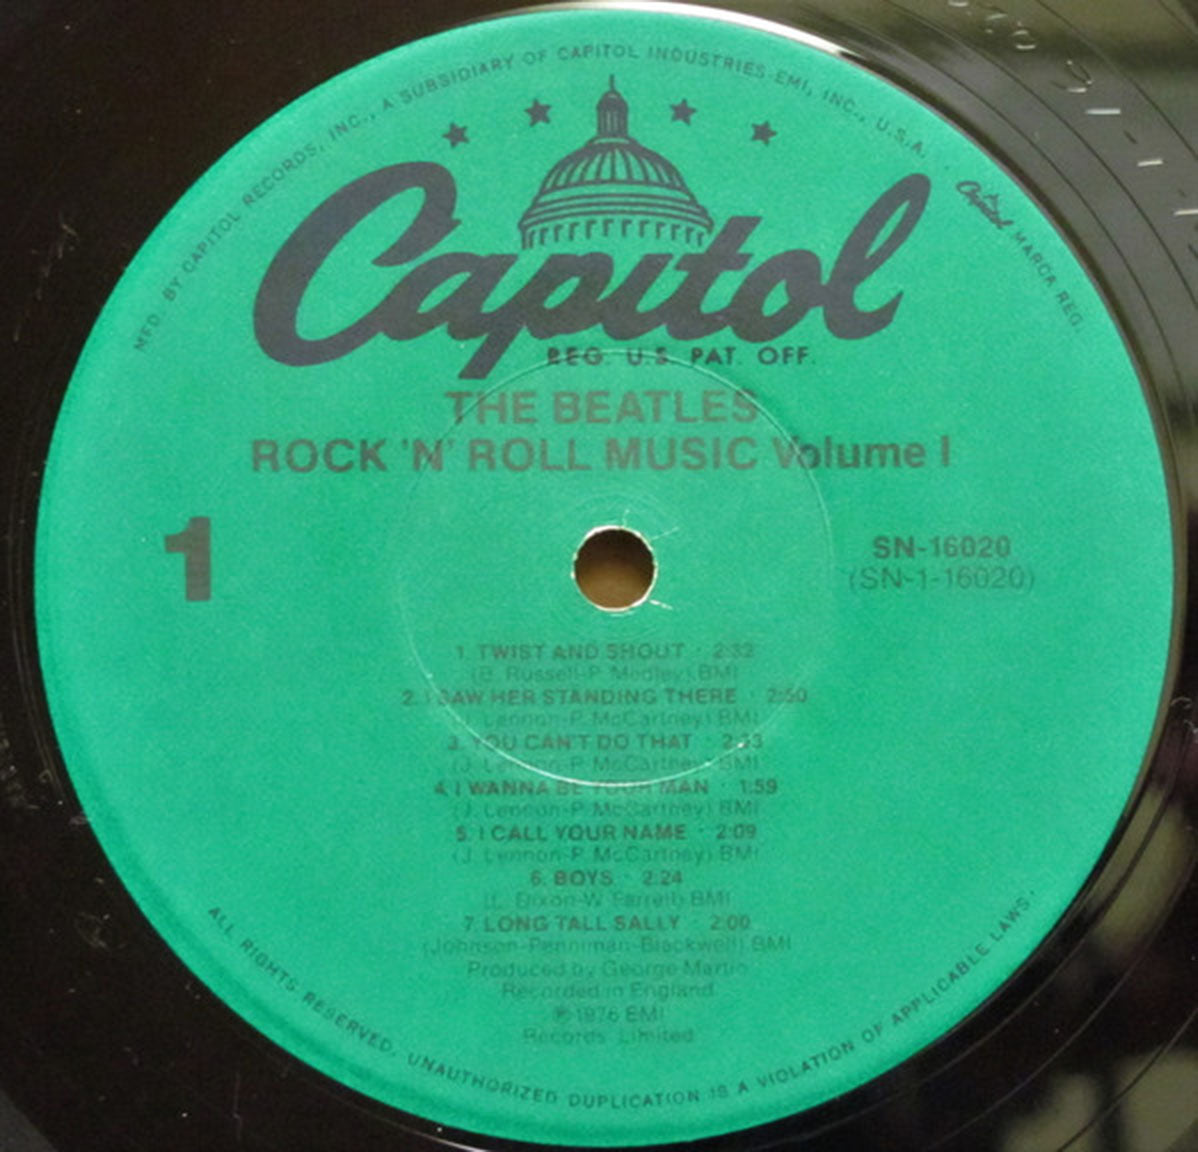 The Beatles – Rock 'n' Roll Music, Volume 1 - US Pressing